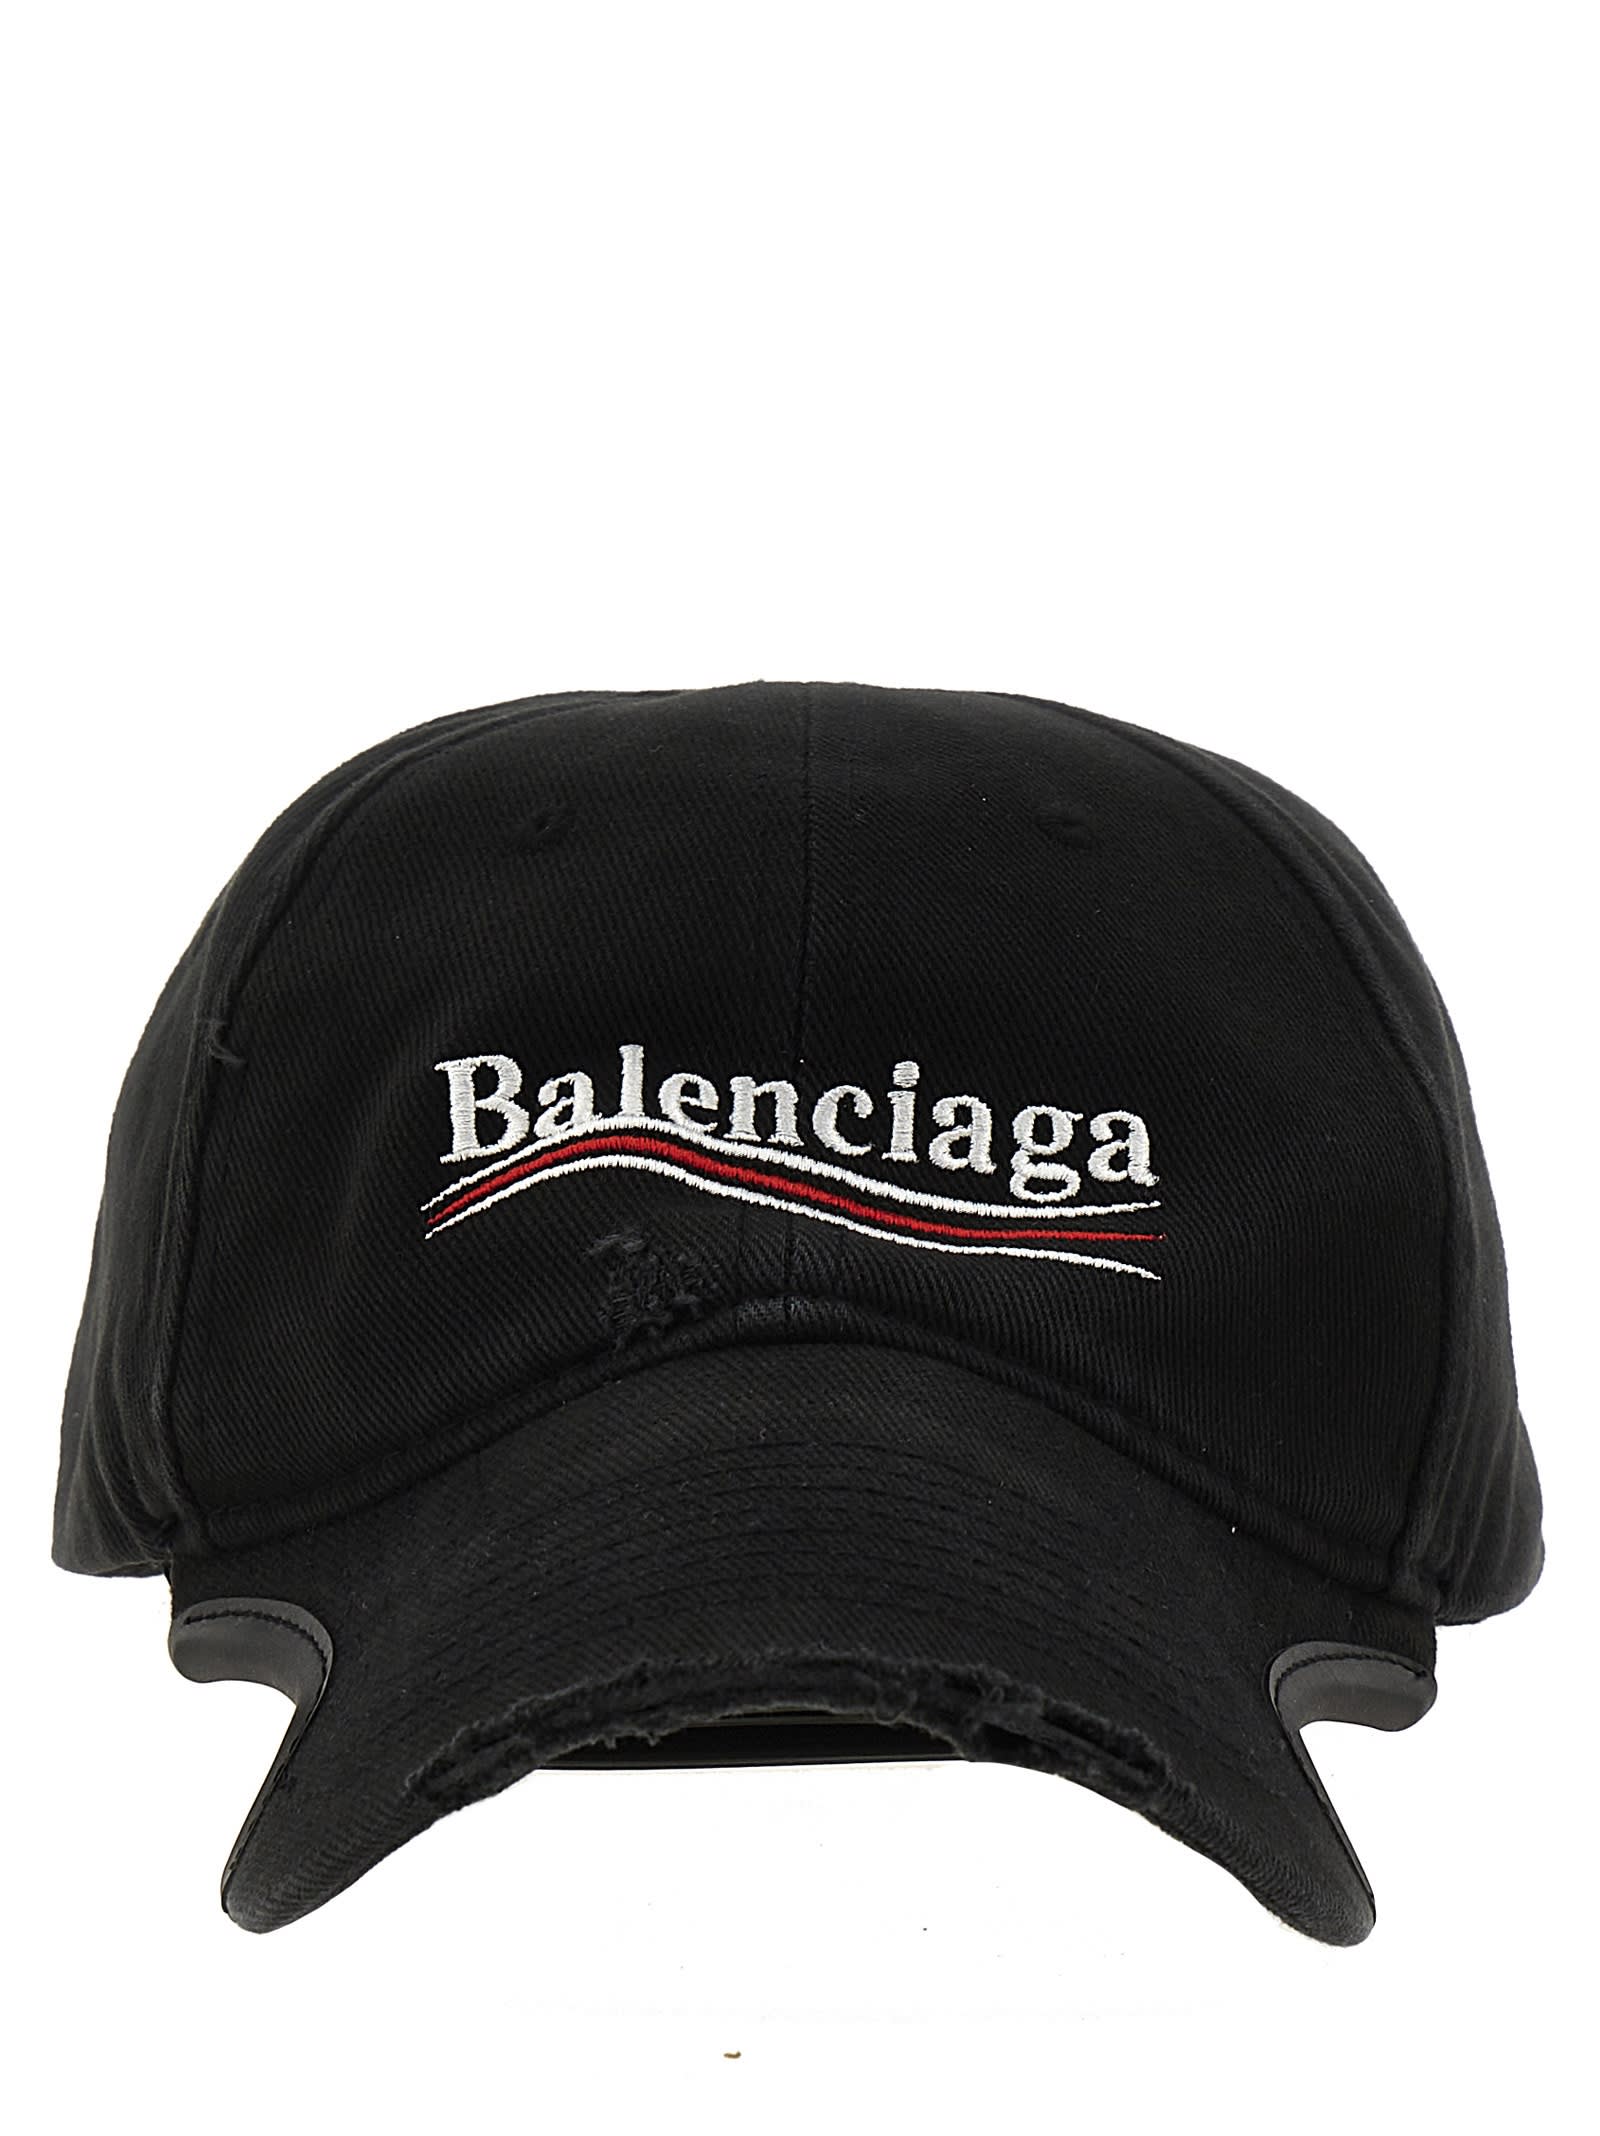 Balenciaga Political Campaign Cap